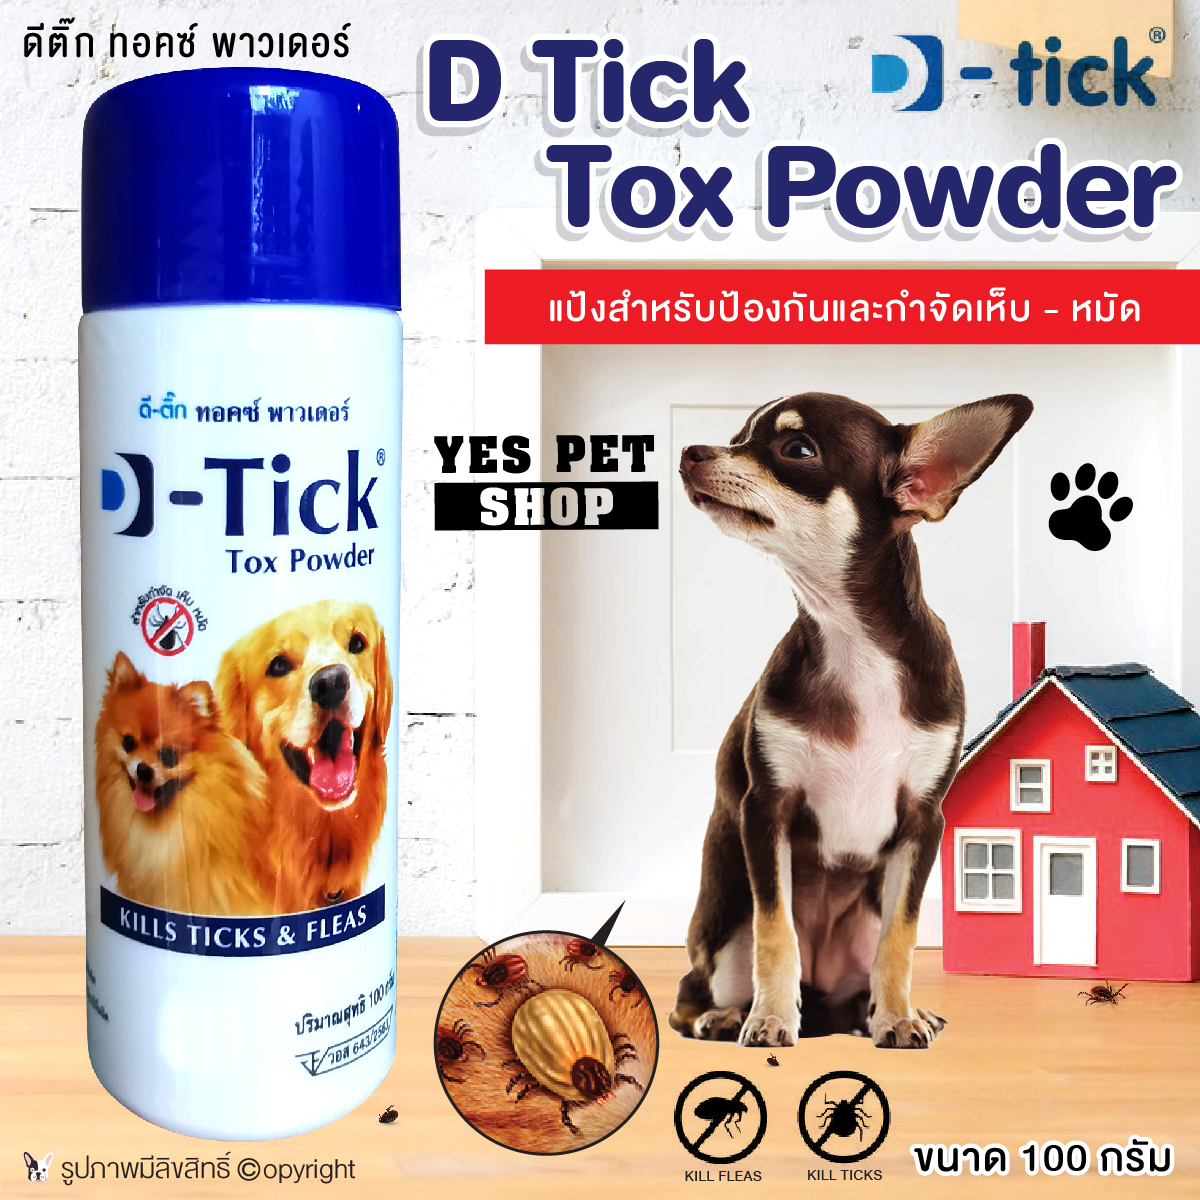 รูปภาพเพิ่มเติมเกี่ยวกับ D-tick ดีติ๊ก Tox Powder แป้งป้องกันเห็บหมัด สำหรับสุนัข ขนาด 100 กรัม โดย Yes Pet Shop